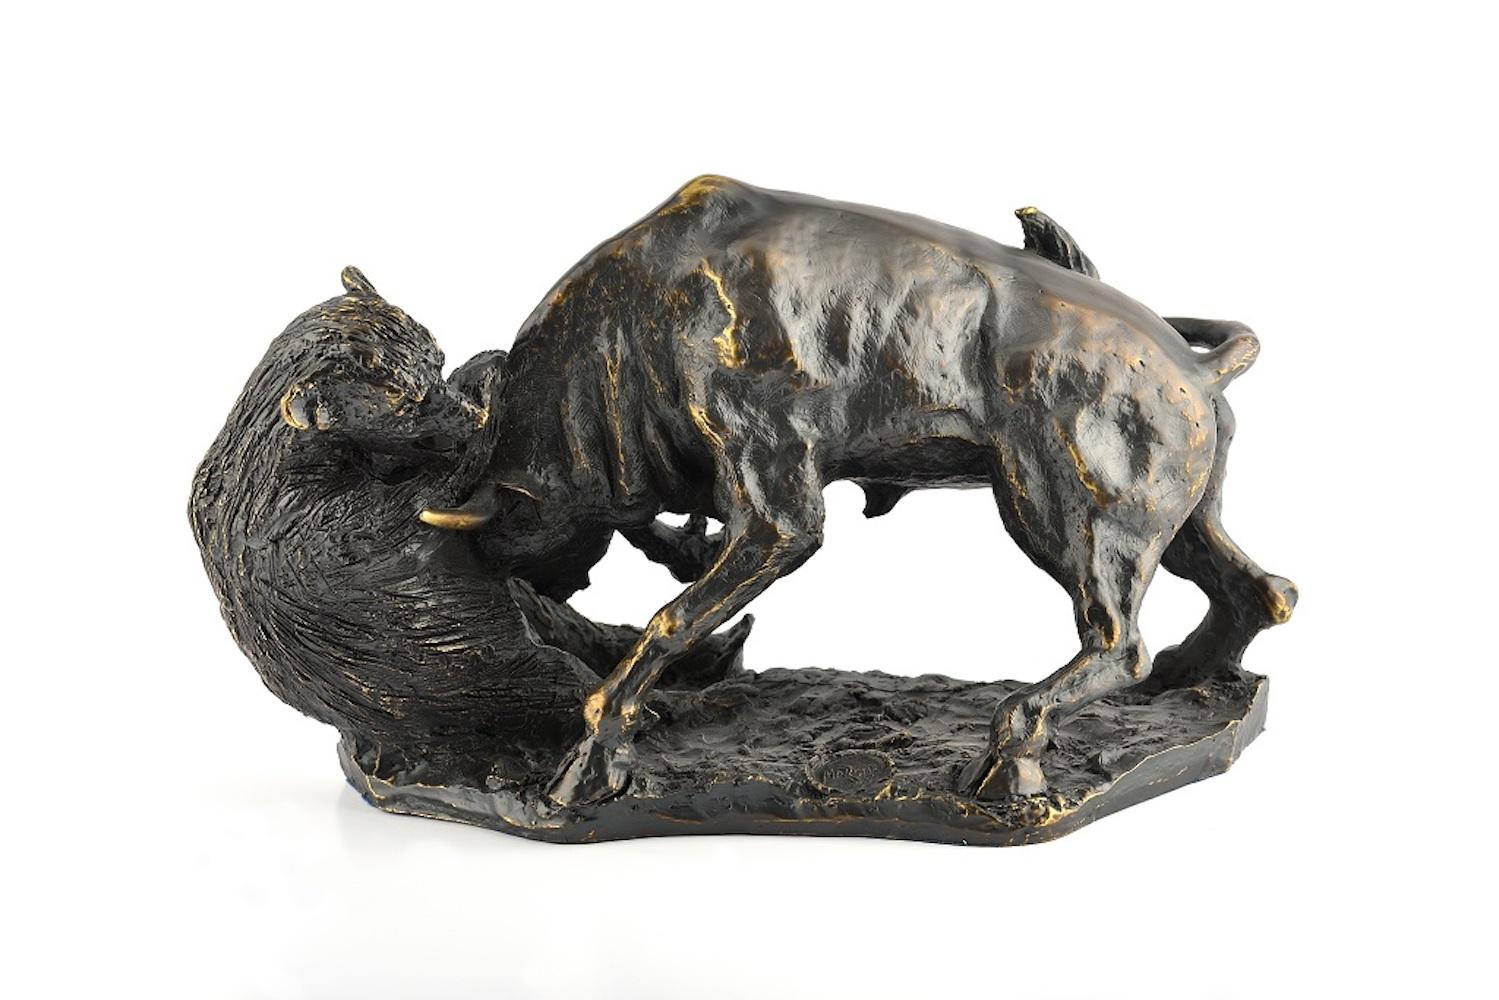 Domenico Mazzone Figurative Sculpture - Wall Street Bull and Bear - Original Bronze Sculpture by D. Mazzone - 1988